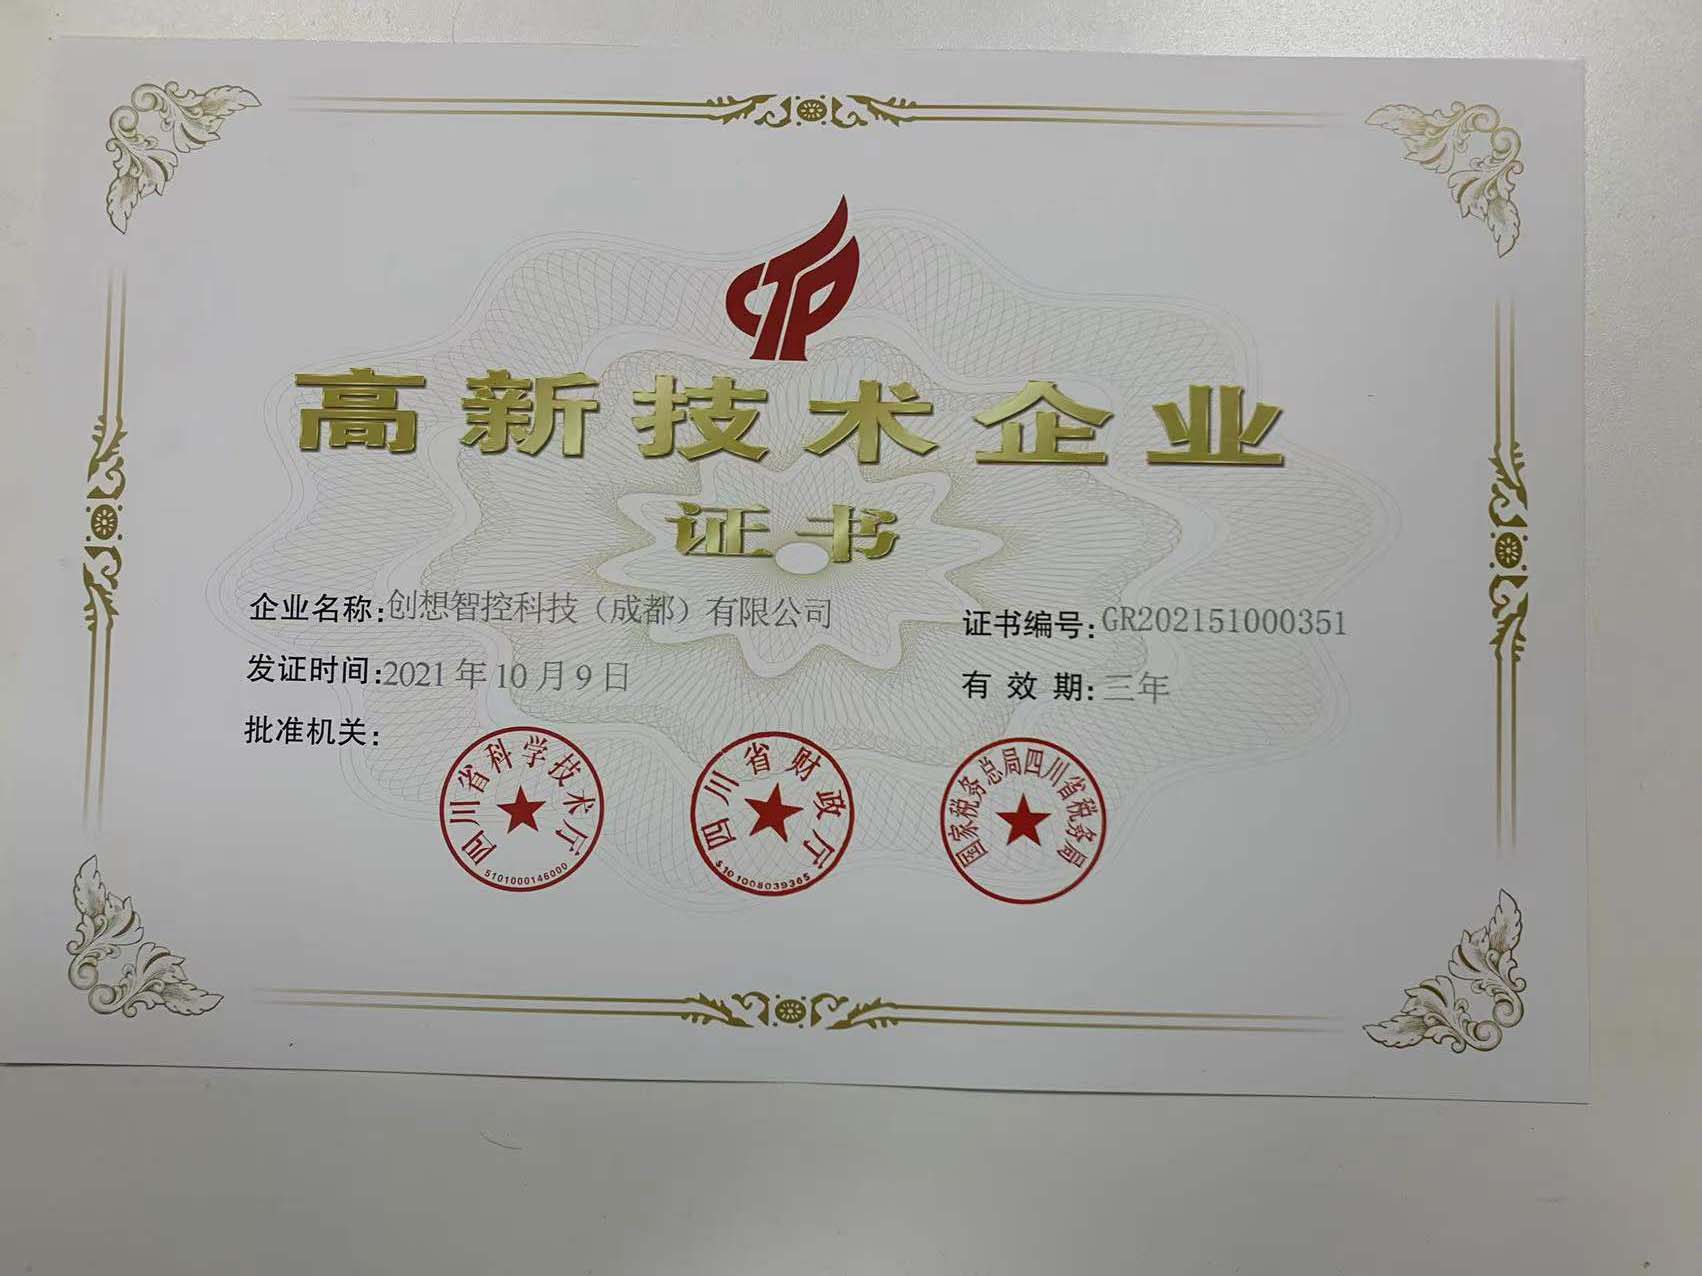 必赢网址bwi437成都子公司荣获高新技术企业证书